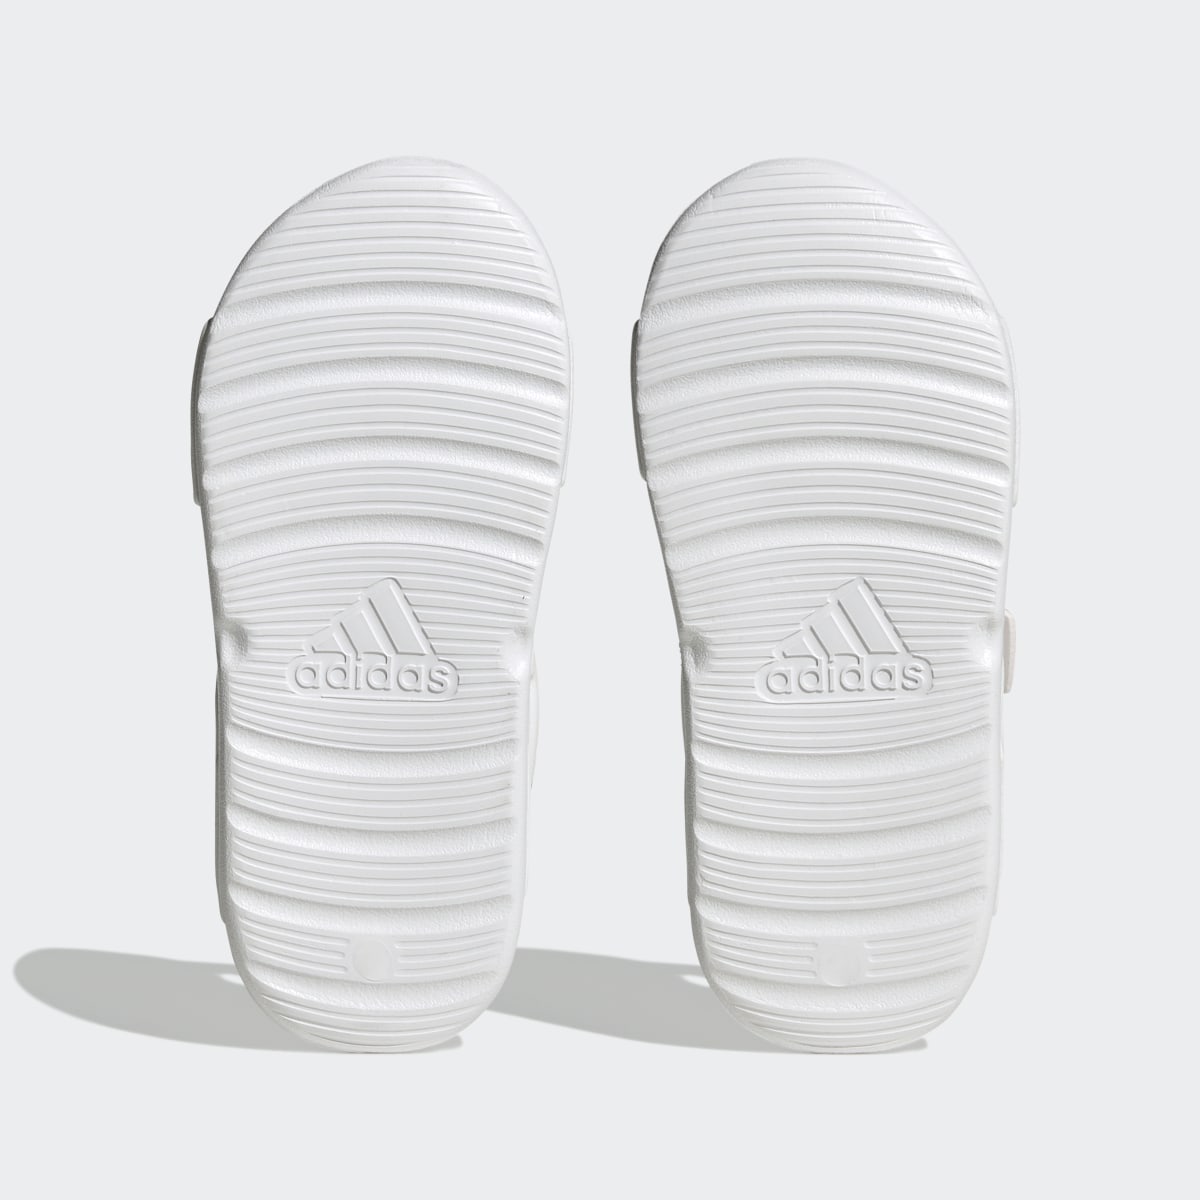 Adidas Altaswim Sandals. 4